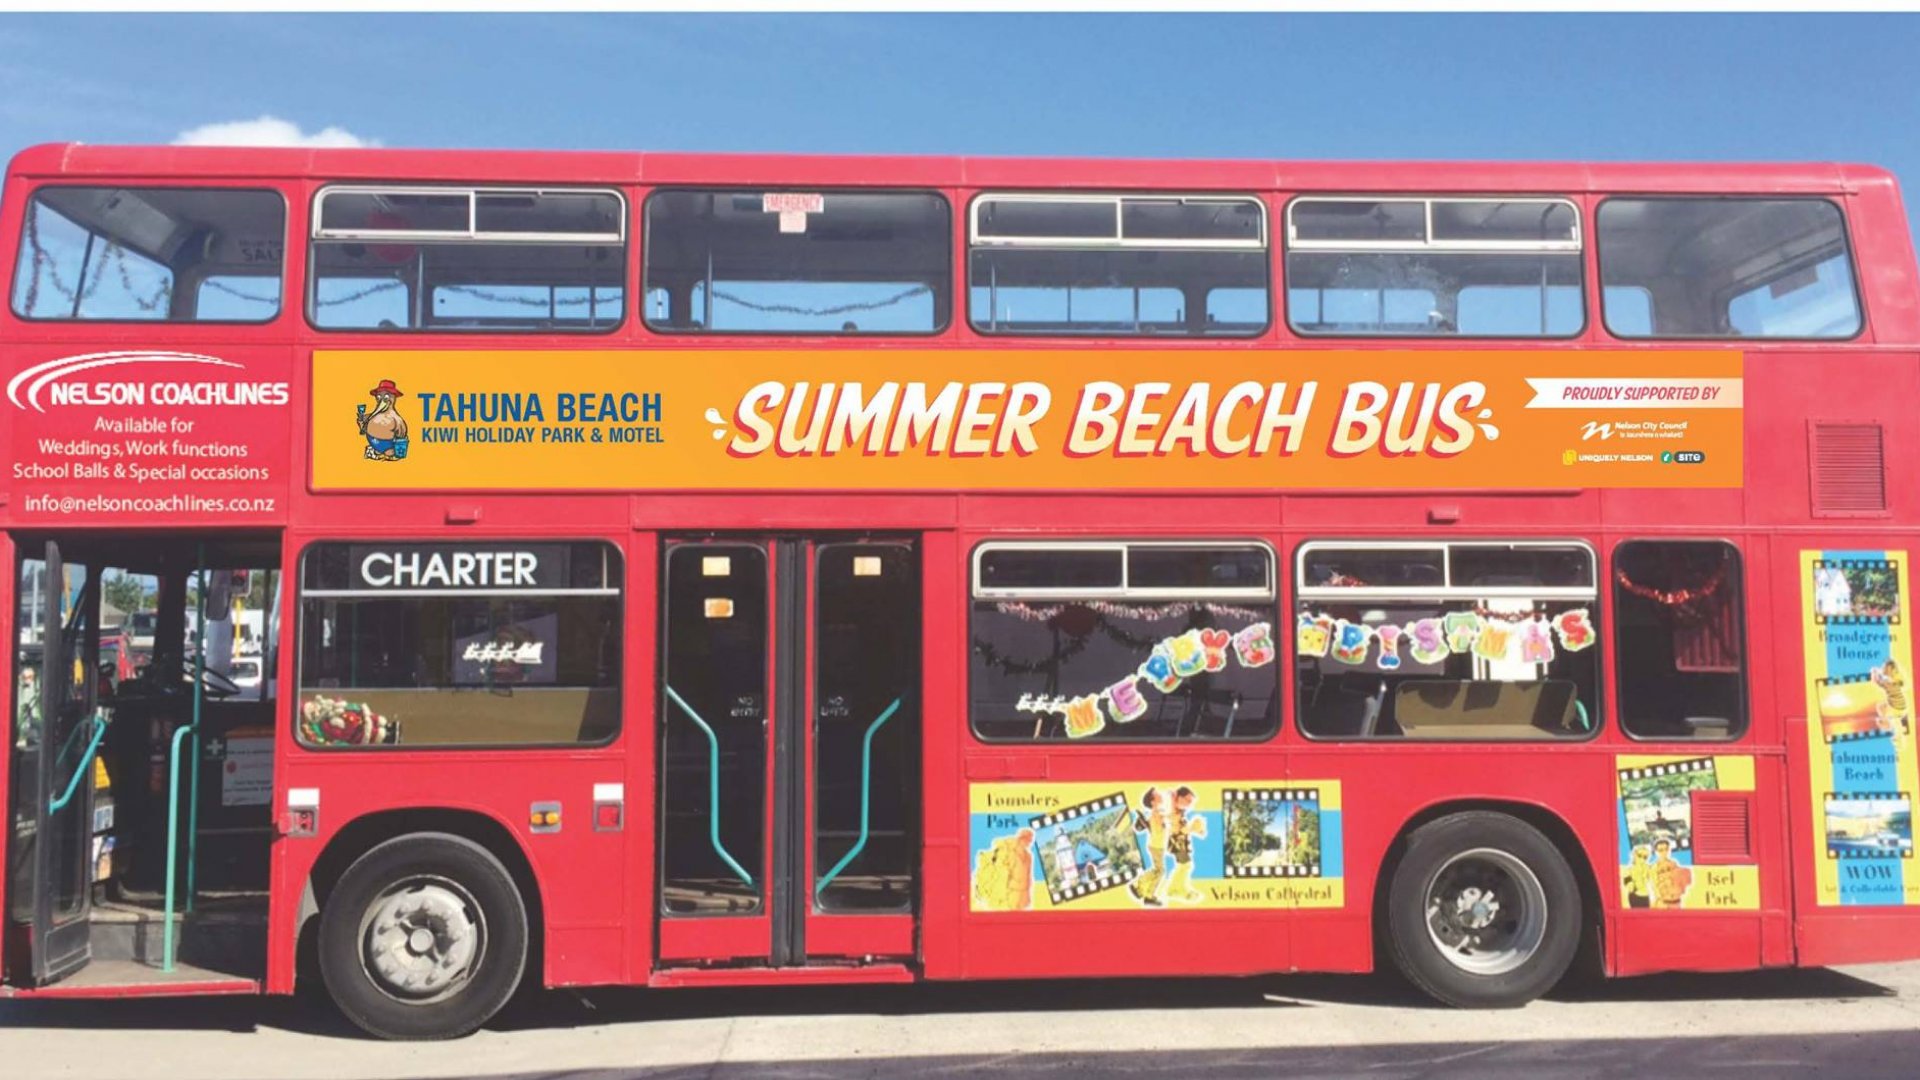 The Summer Beach Bus rides again! Our Nelson